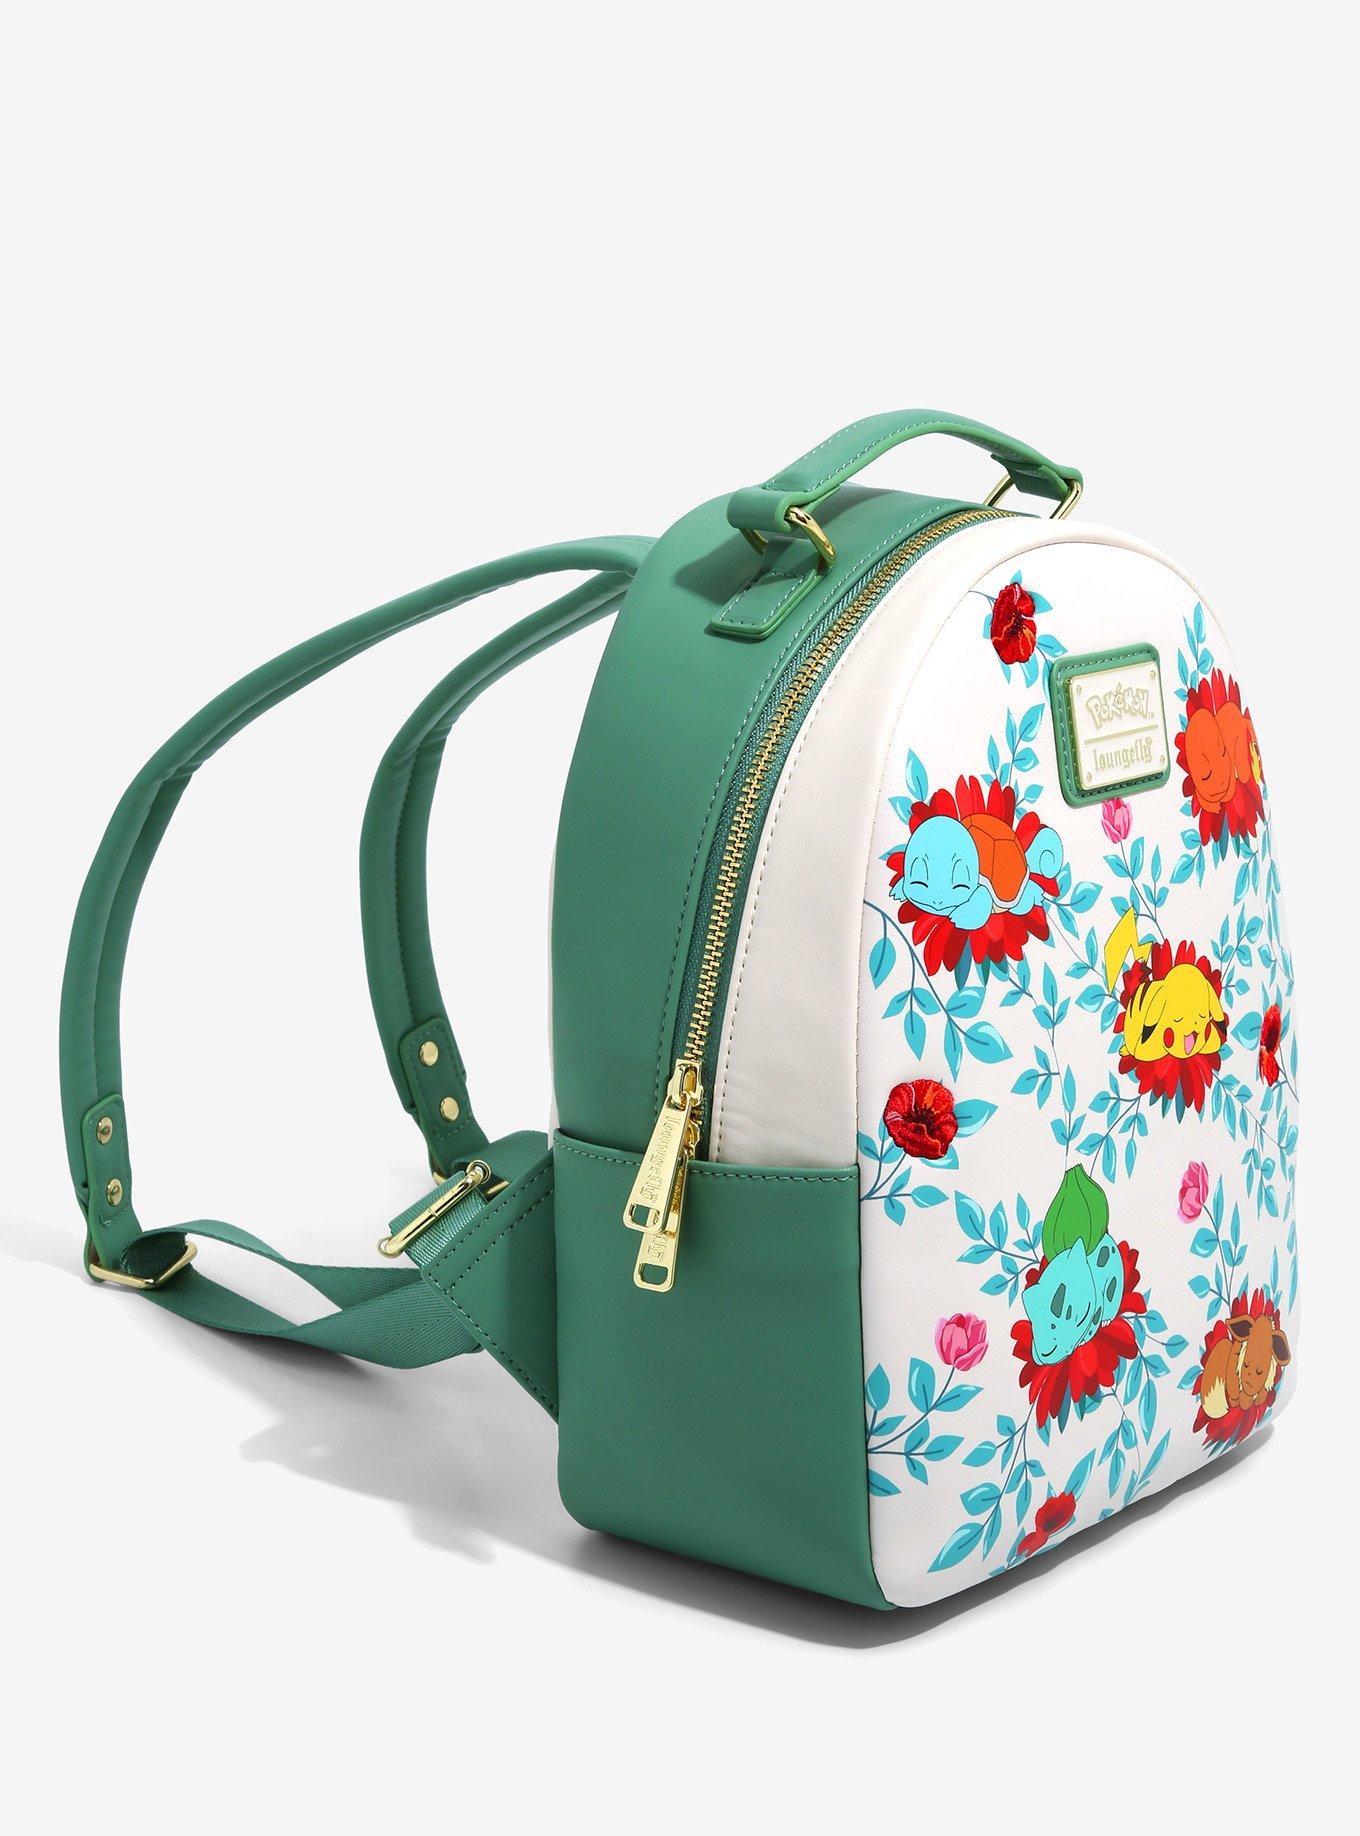 Loungefly Pokémon Eevee Mini Backpack - BoxLunch Exclusive